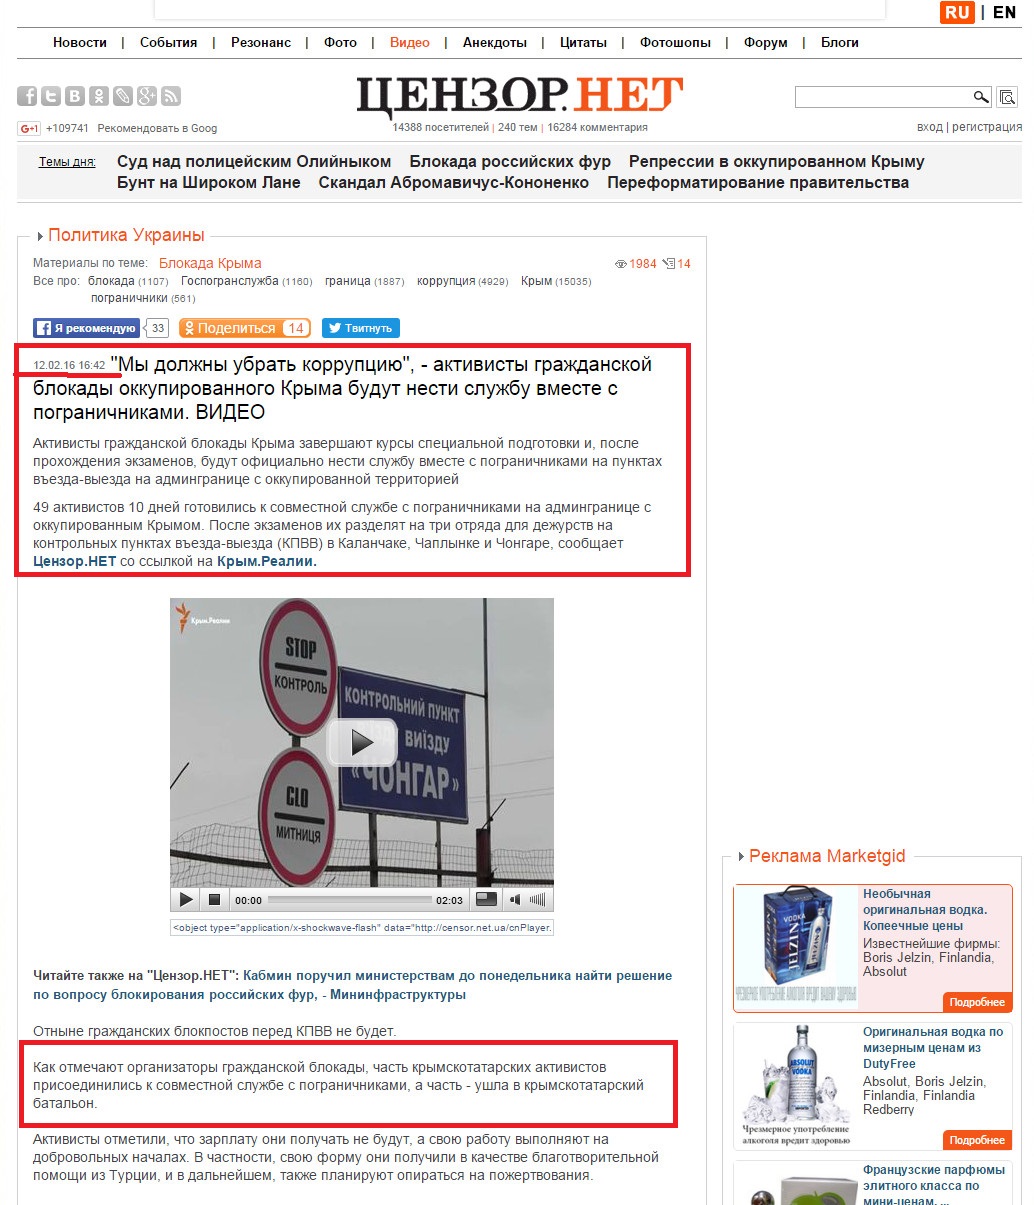 http://censor.net.ua/video_news/374013/my_doljny_ubrat_korruptsiyu_aktivisty_grajdanskoyi_blokady_okkupirovannogo_kryma_budut_nesti_slujbu